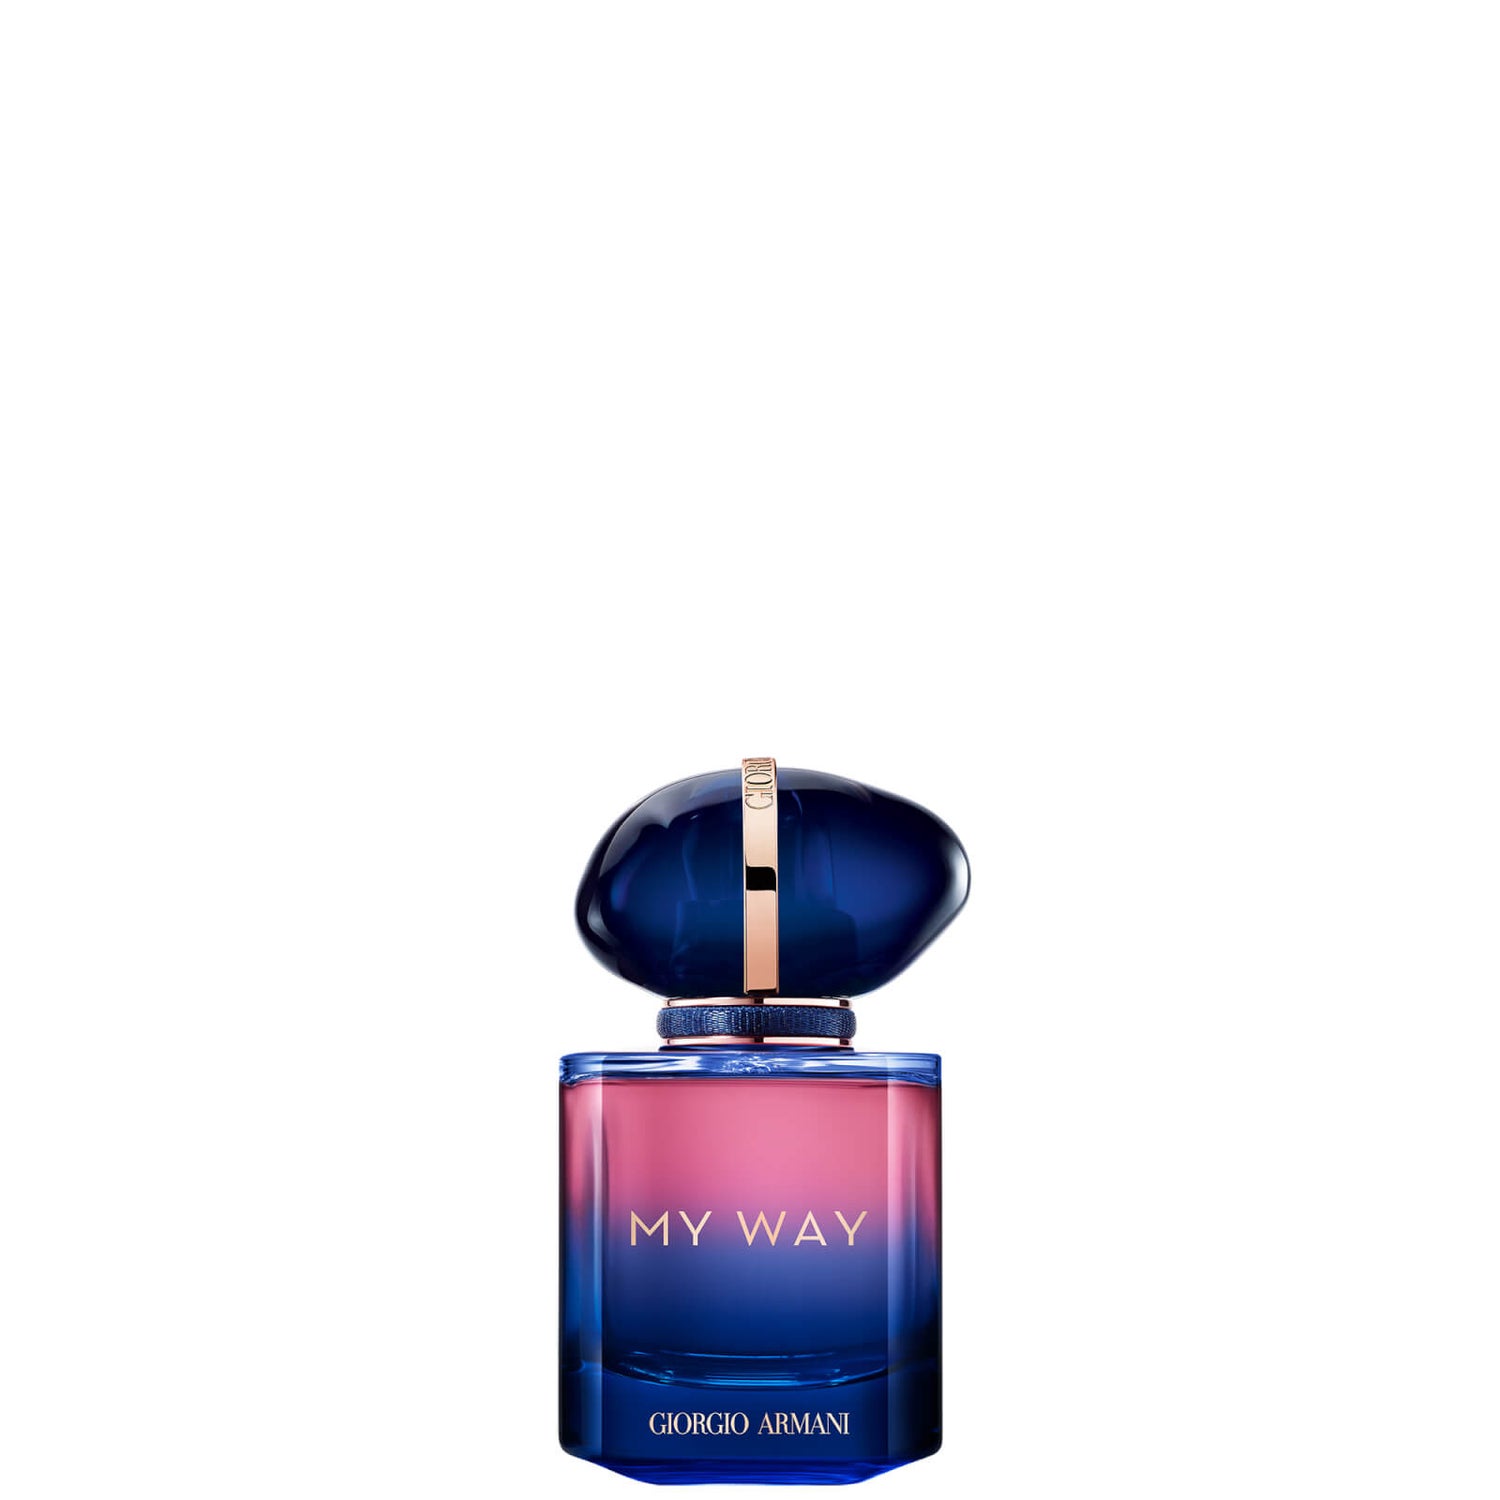 Armani Giorgio Armani Exclusive My Way Le Parfum Eau de Parfum 30ml